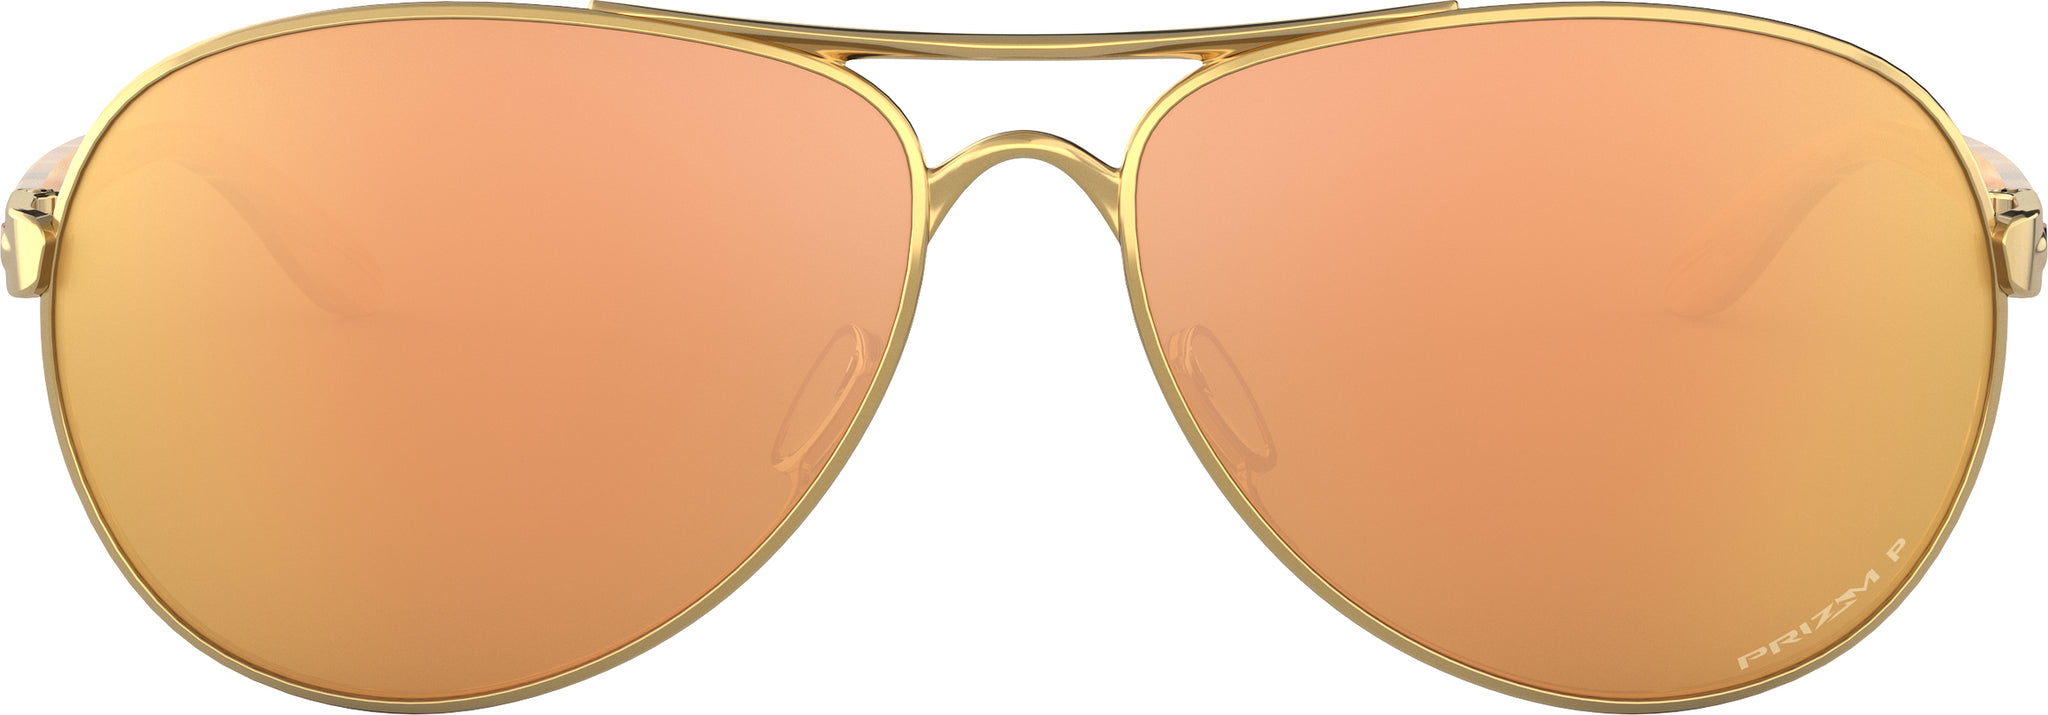 Oakley Lunettes de soleil Feedback - Rose Gold - Lentilles VR50 Brown  Gradient - Femme